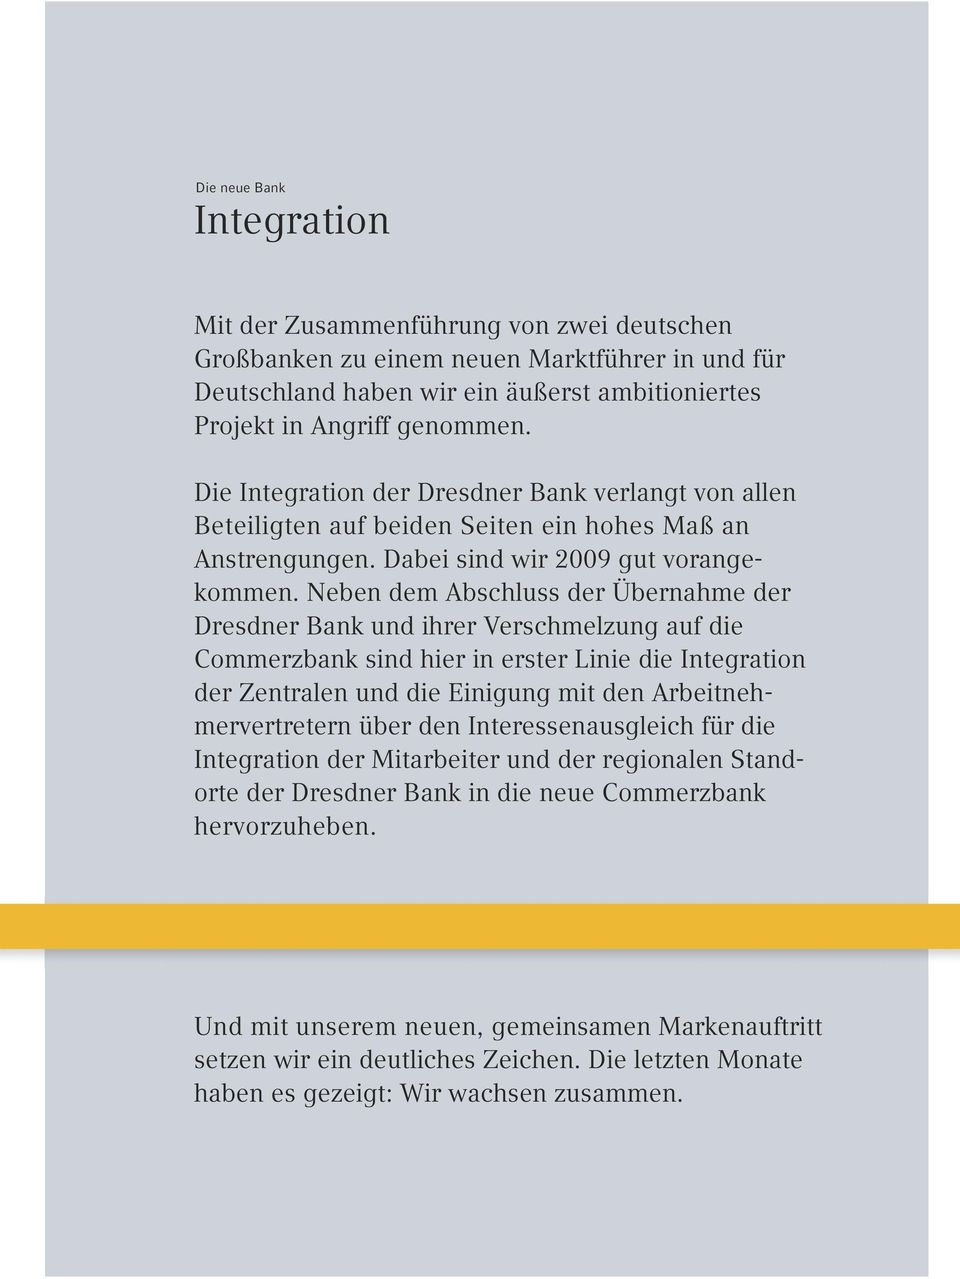 Neben dem Abschluss der Übernahme der Dresdner Bank und ihrer Verschmelzung auf die Commerzbank sind hier in erster Linie die Integration der Zentralen und die Einigung mit den Arbeitnehmervertretern